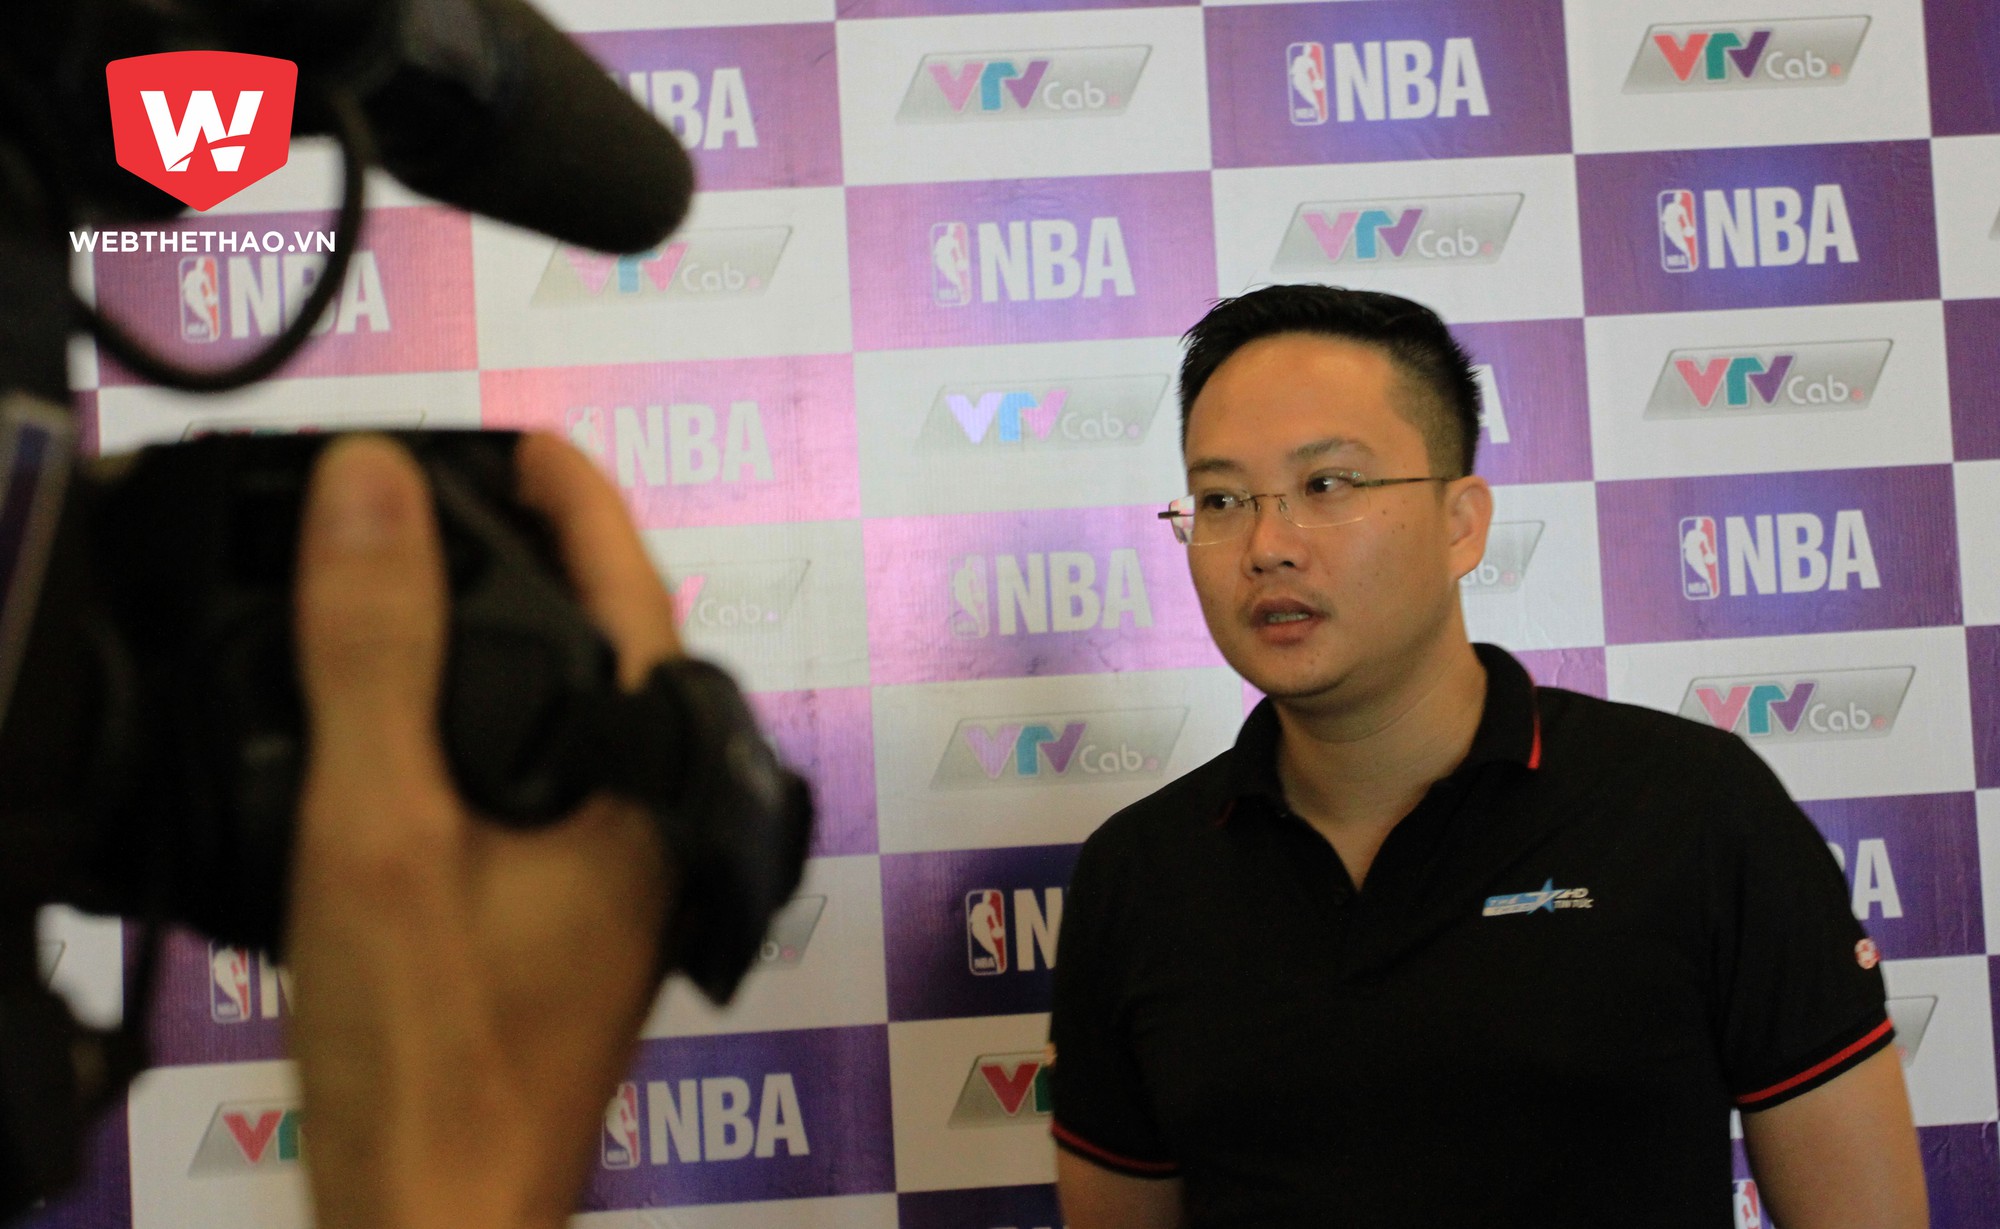 Ông Trần Văn Thắng, Phó trưởng an Thể thao, VTVcab cho rằng việc phát sóng giải NBA sẽ thúc đẩy sự phát triển bóng rổ tại Việt Nam.